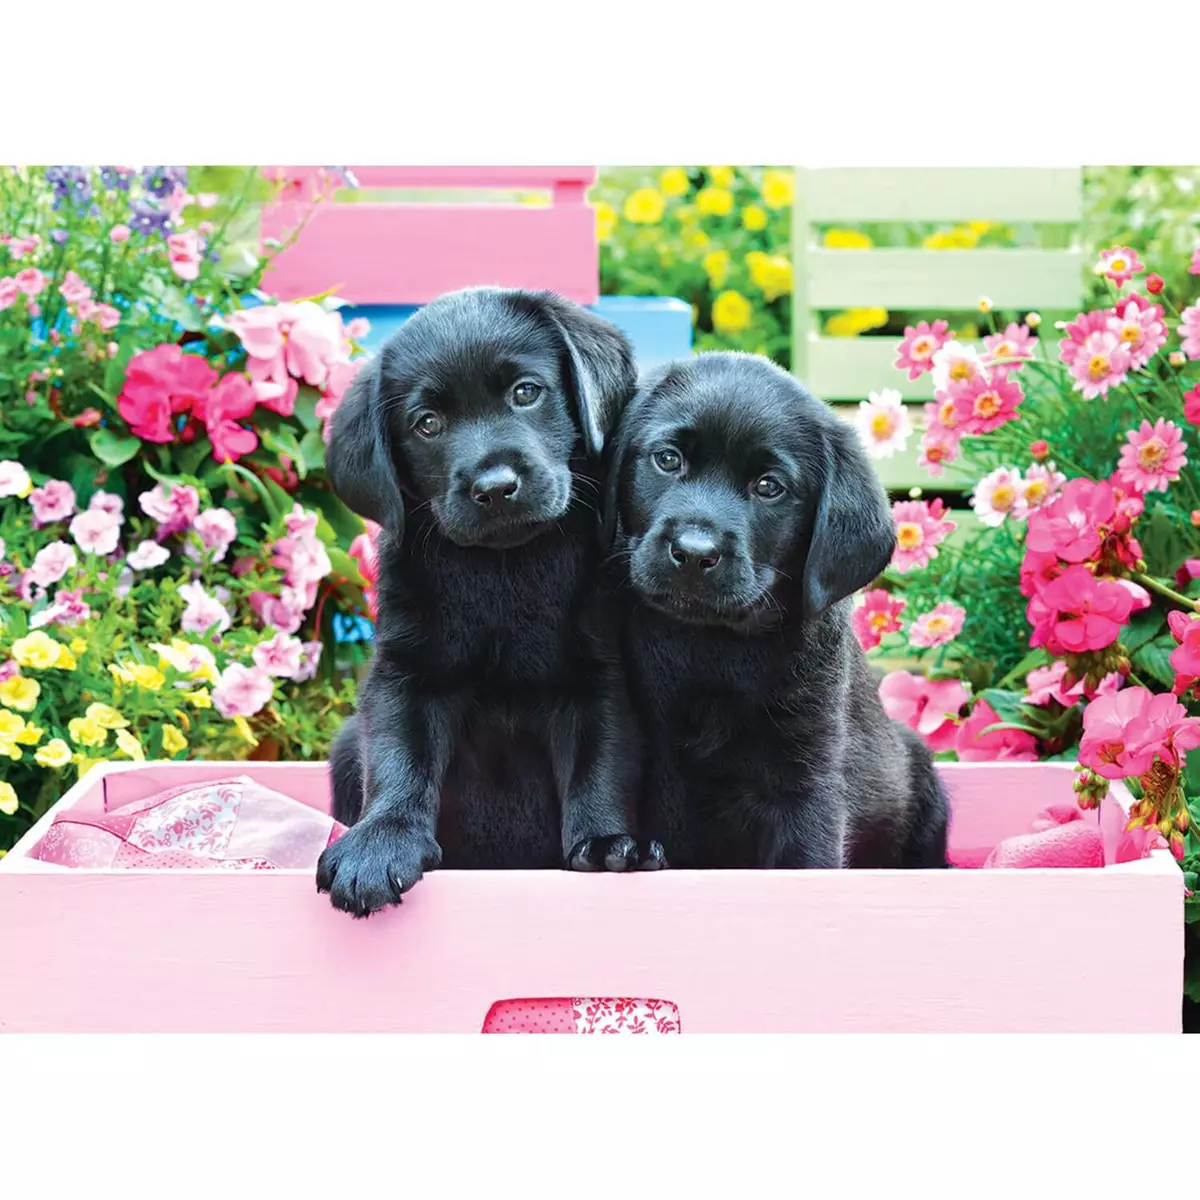 Eurographics Puzzle 500 pièces Larges : Labradors noirs dans une boîte rose